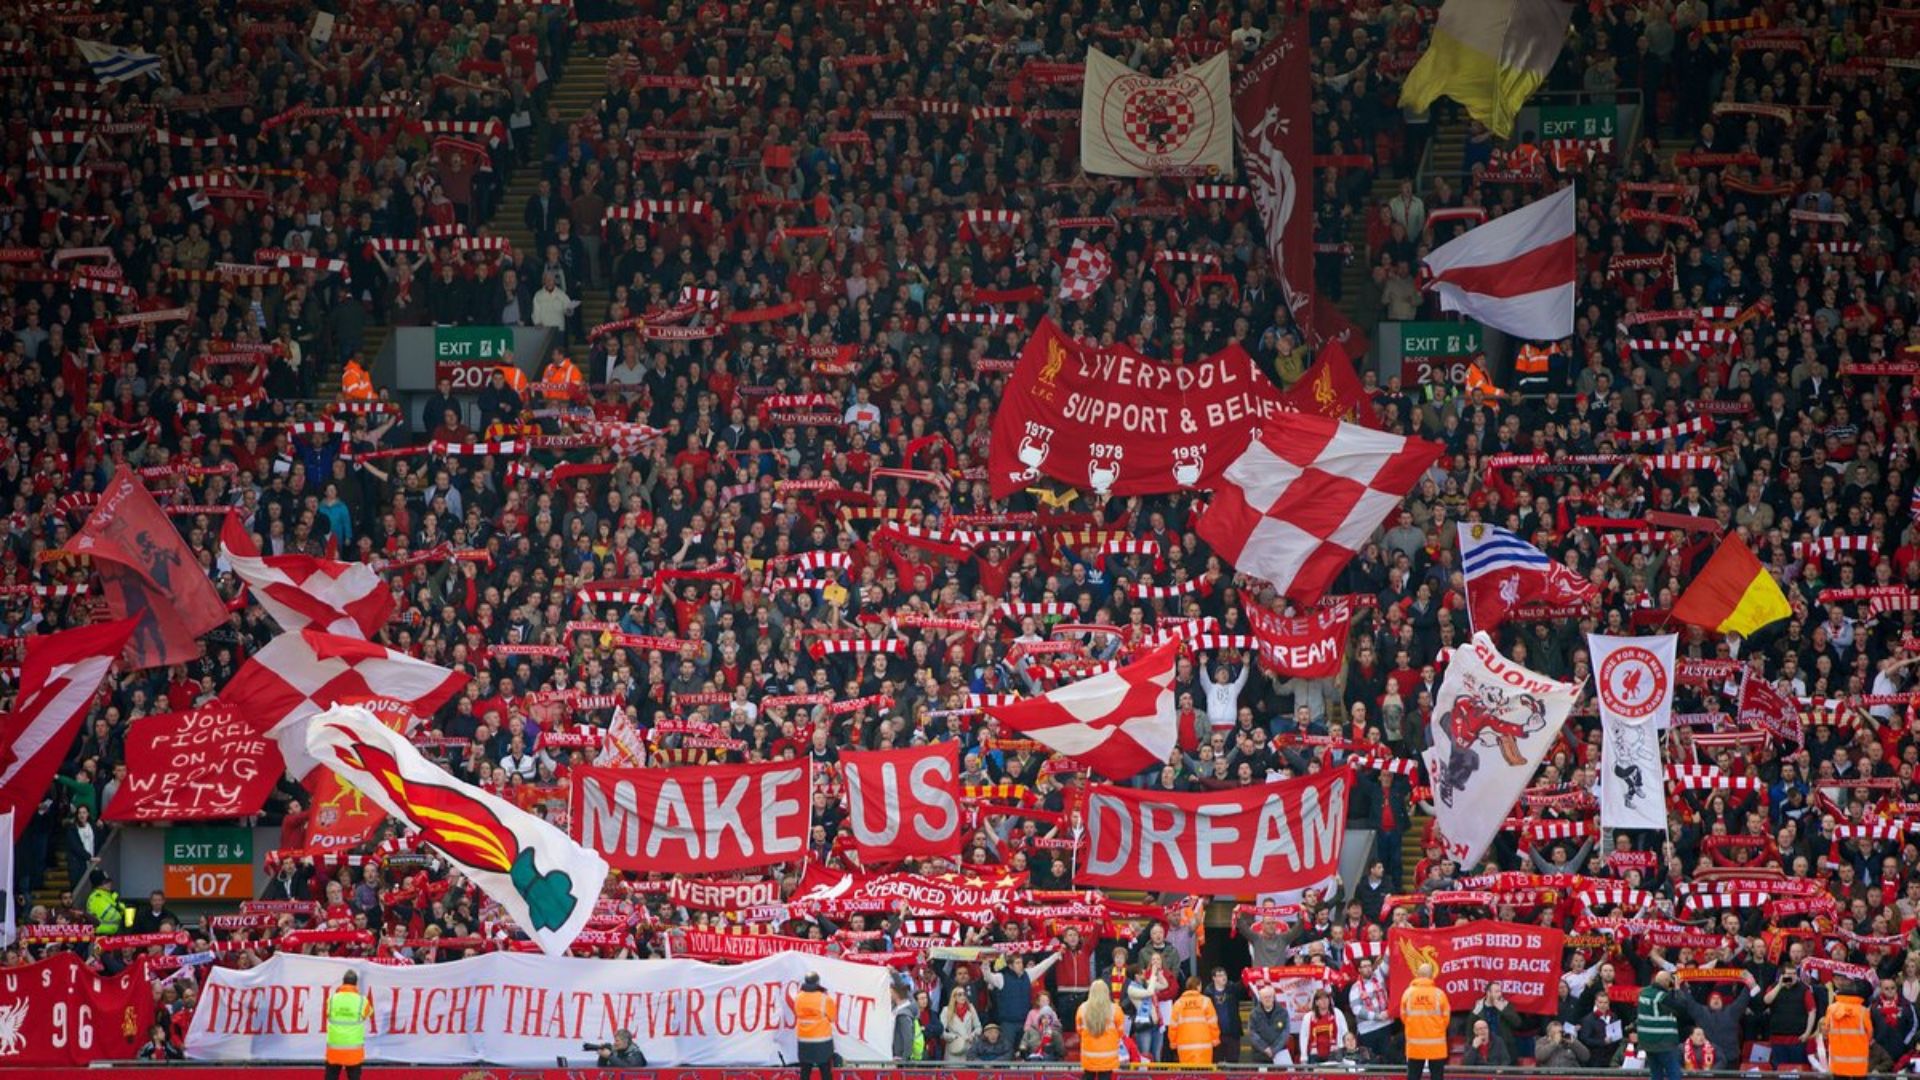 Tận hưởng tinh thần fan cuồng Liverpool của bạn với những bức ảnh nền đẹp mắt trên máy tính của bạn! Liverpool PC Wallpapers sẽ khiến mỗi ngày của bạn tràn đầy niềm đam mê và sự kiêu hãnh.